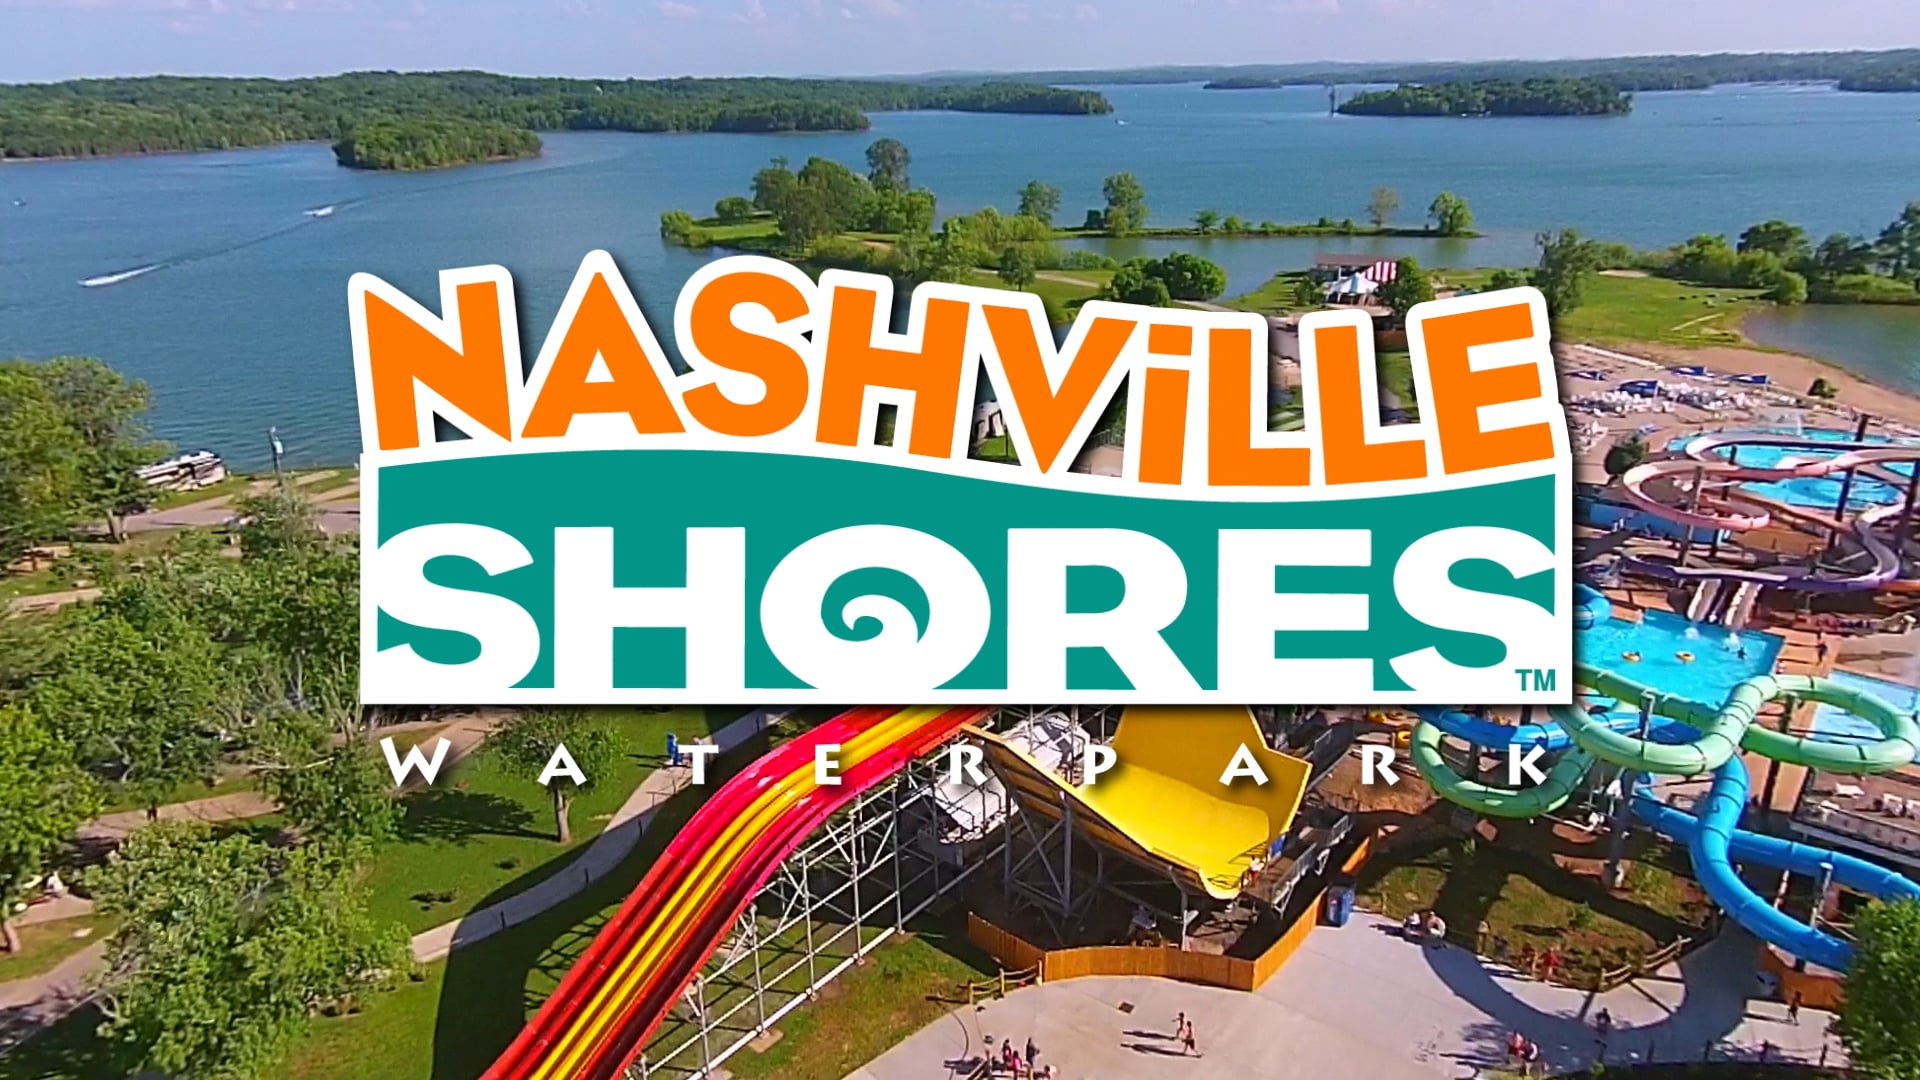 Nashville Shores Season Pass 2022 30 P2 1920x1080 on Vimeo